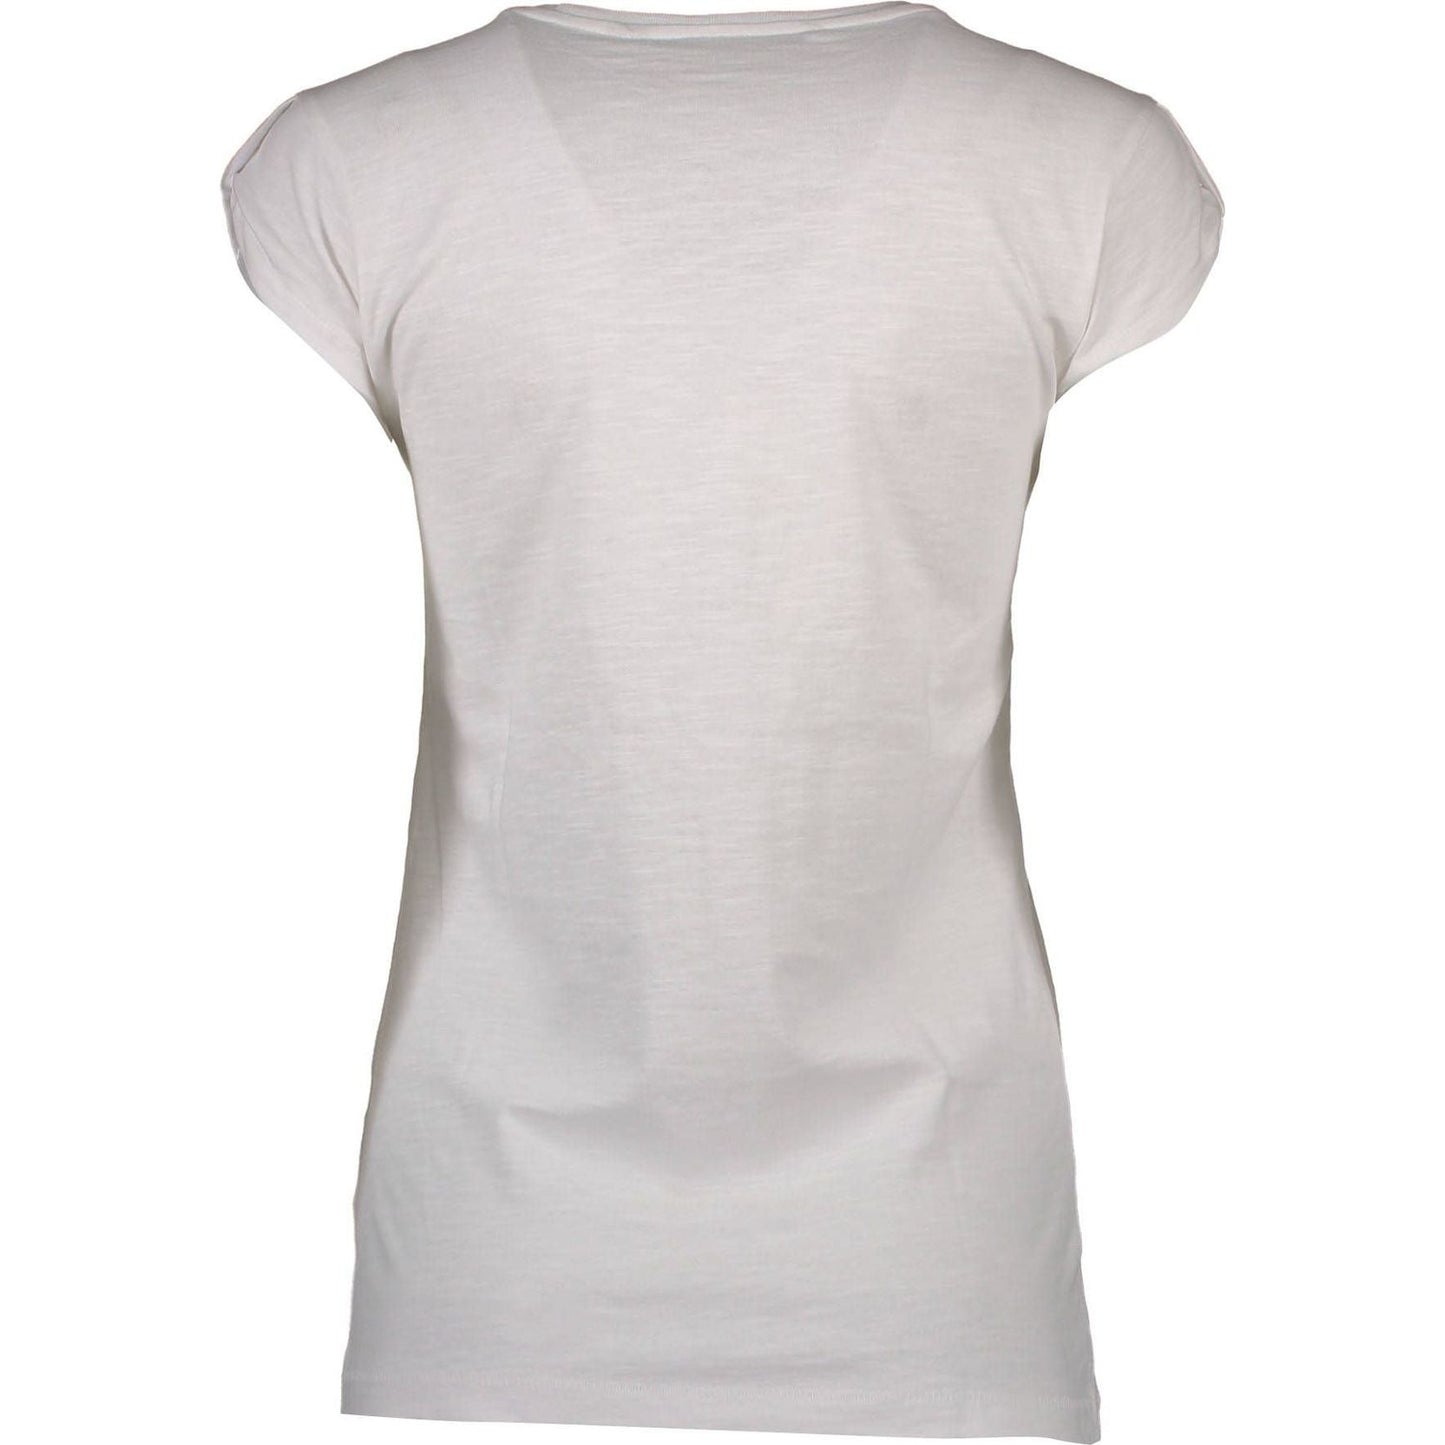 Silvian Heach Silvian Heach Chic White Printed T-Shirt silvian-heach-chic-white-printed-t-shirt